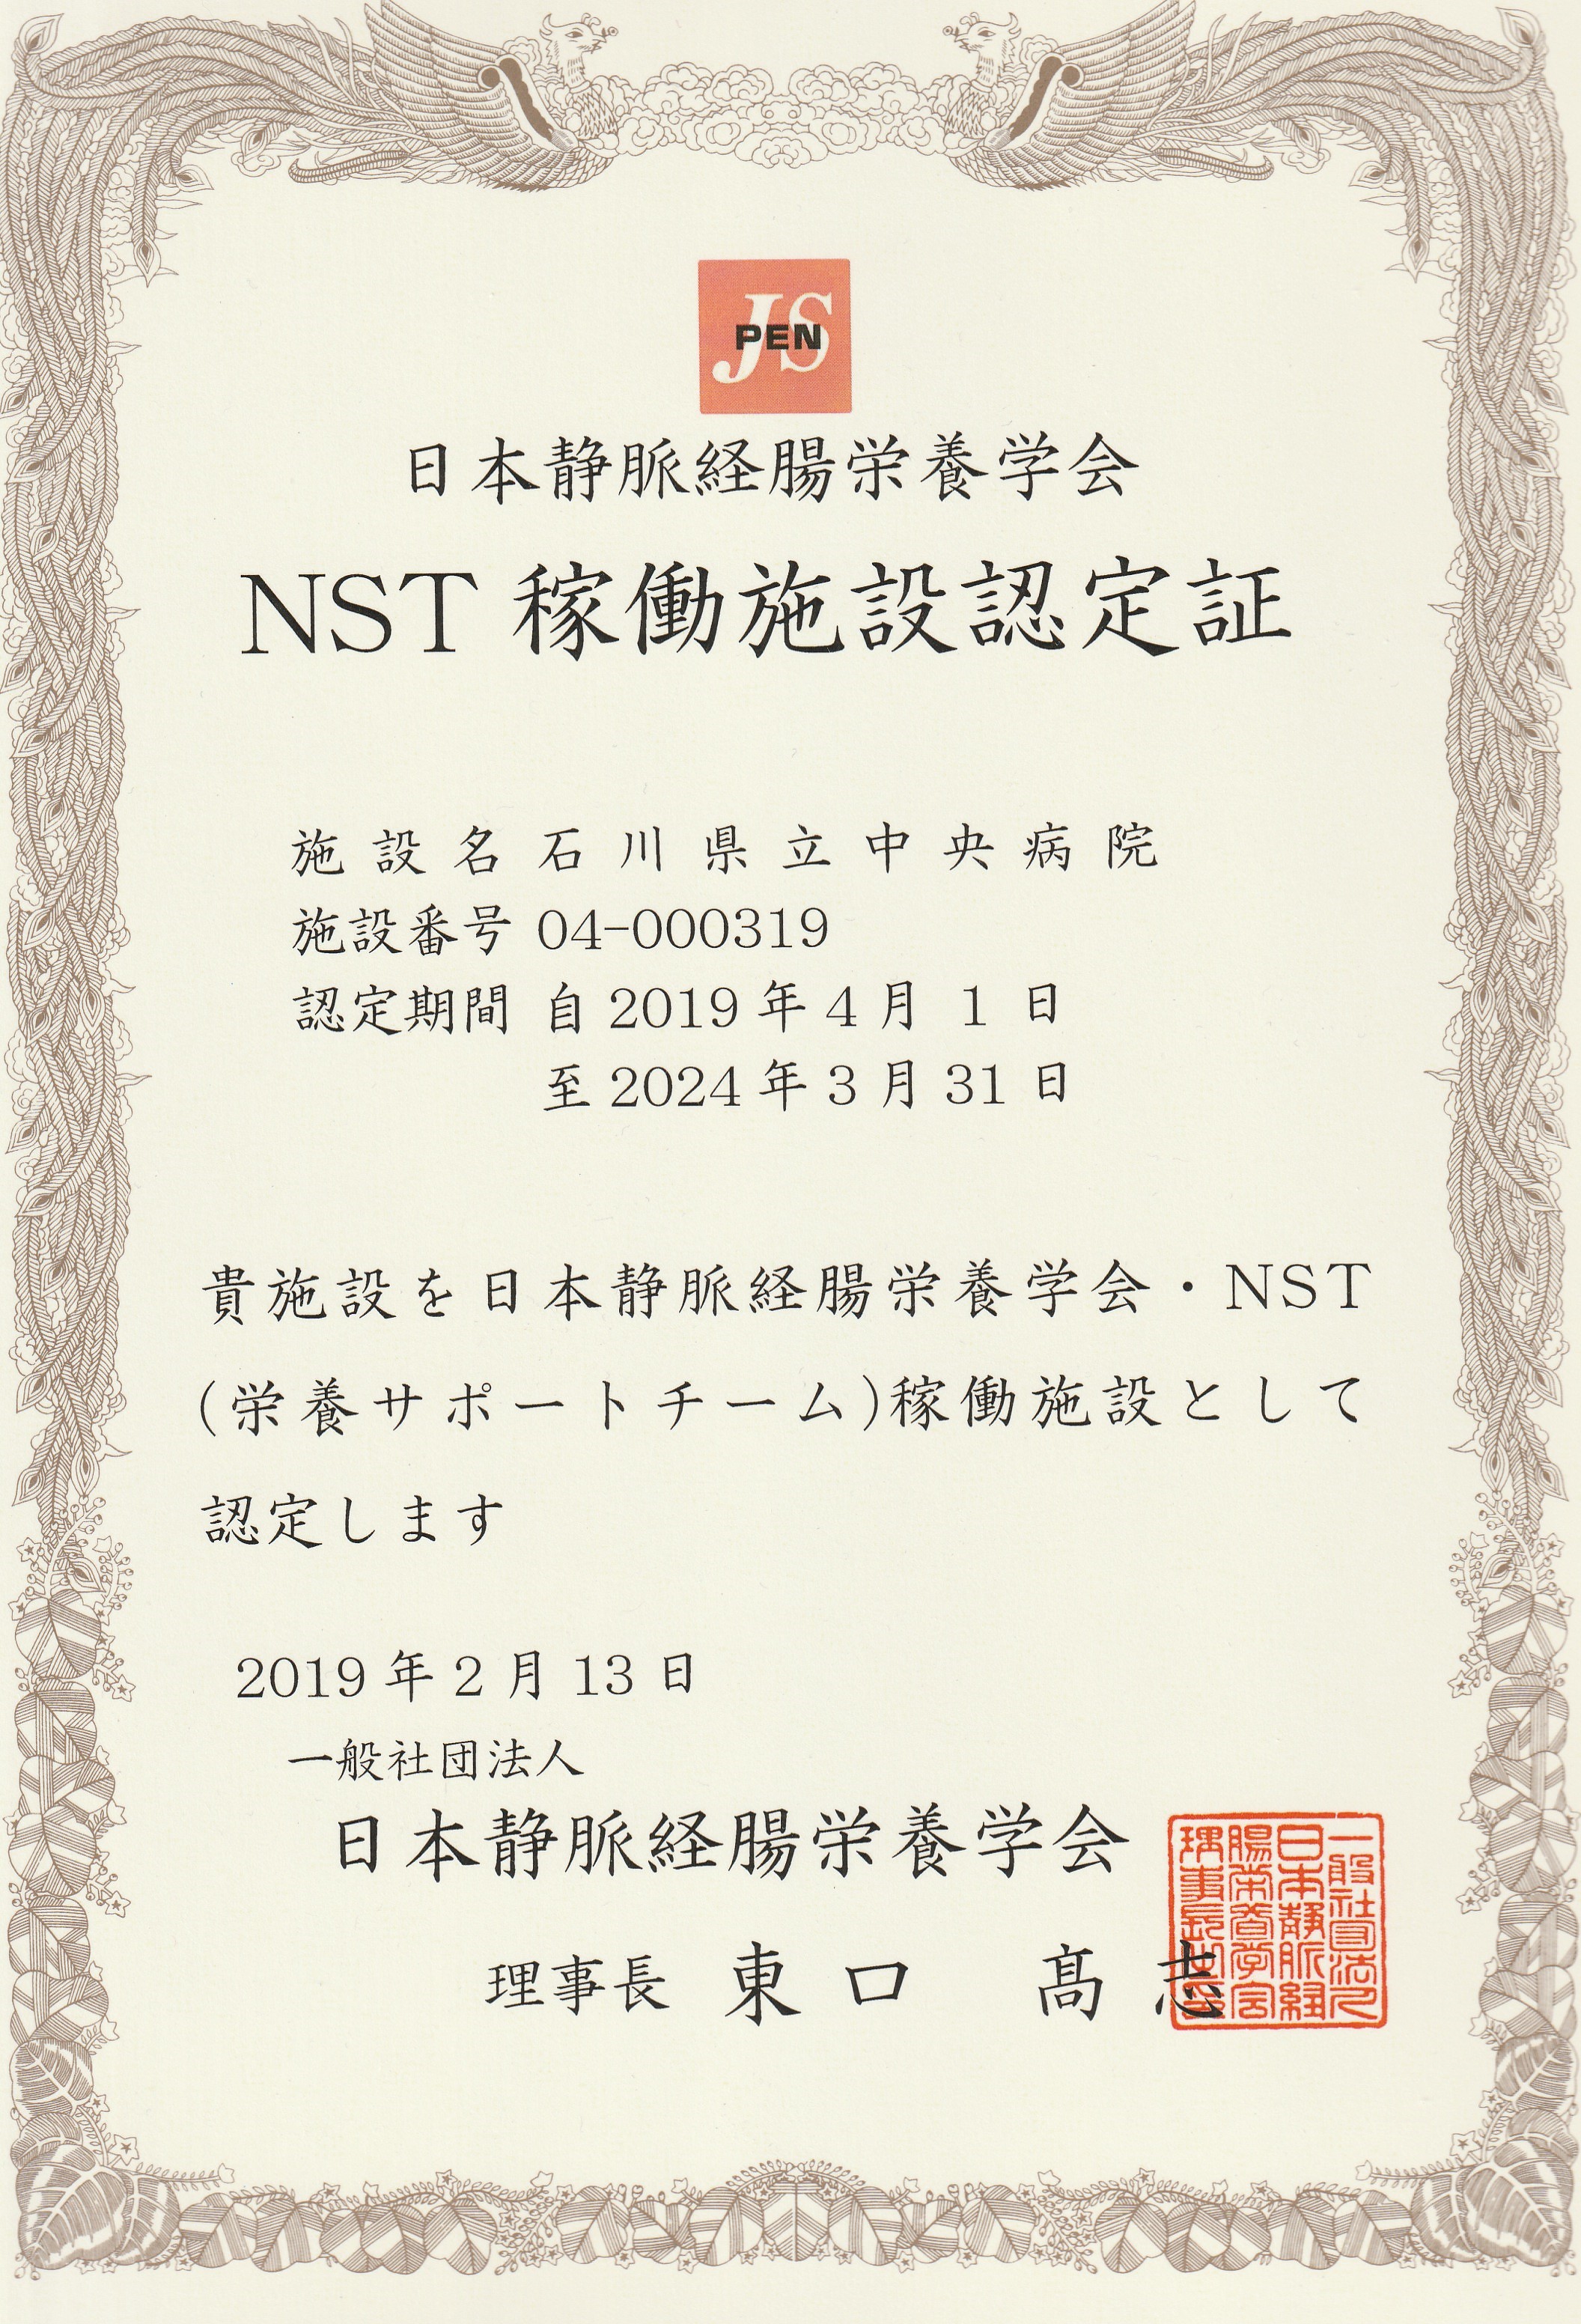 日本静脈経腸栄養学会NST稼働施設認定証